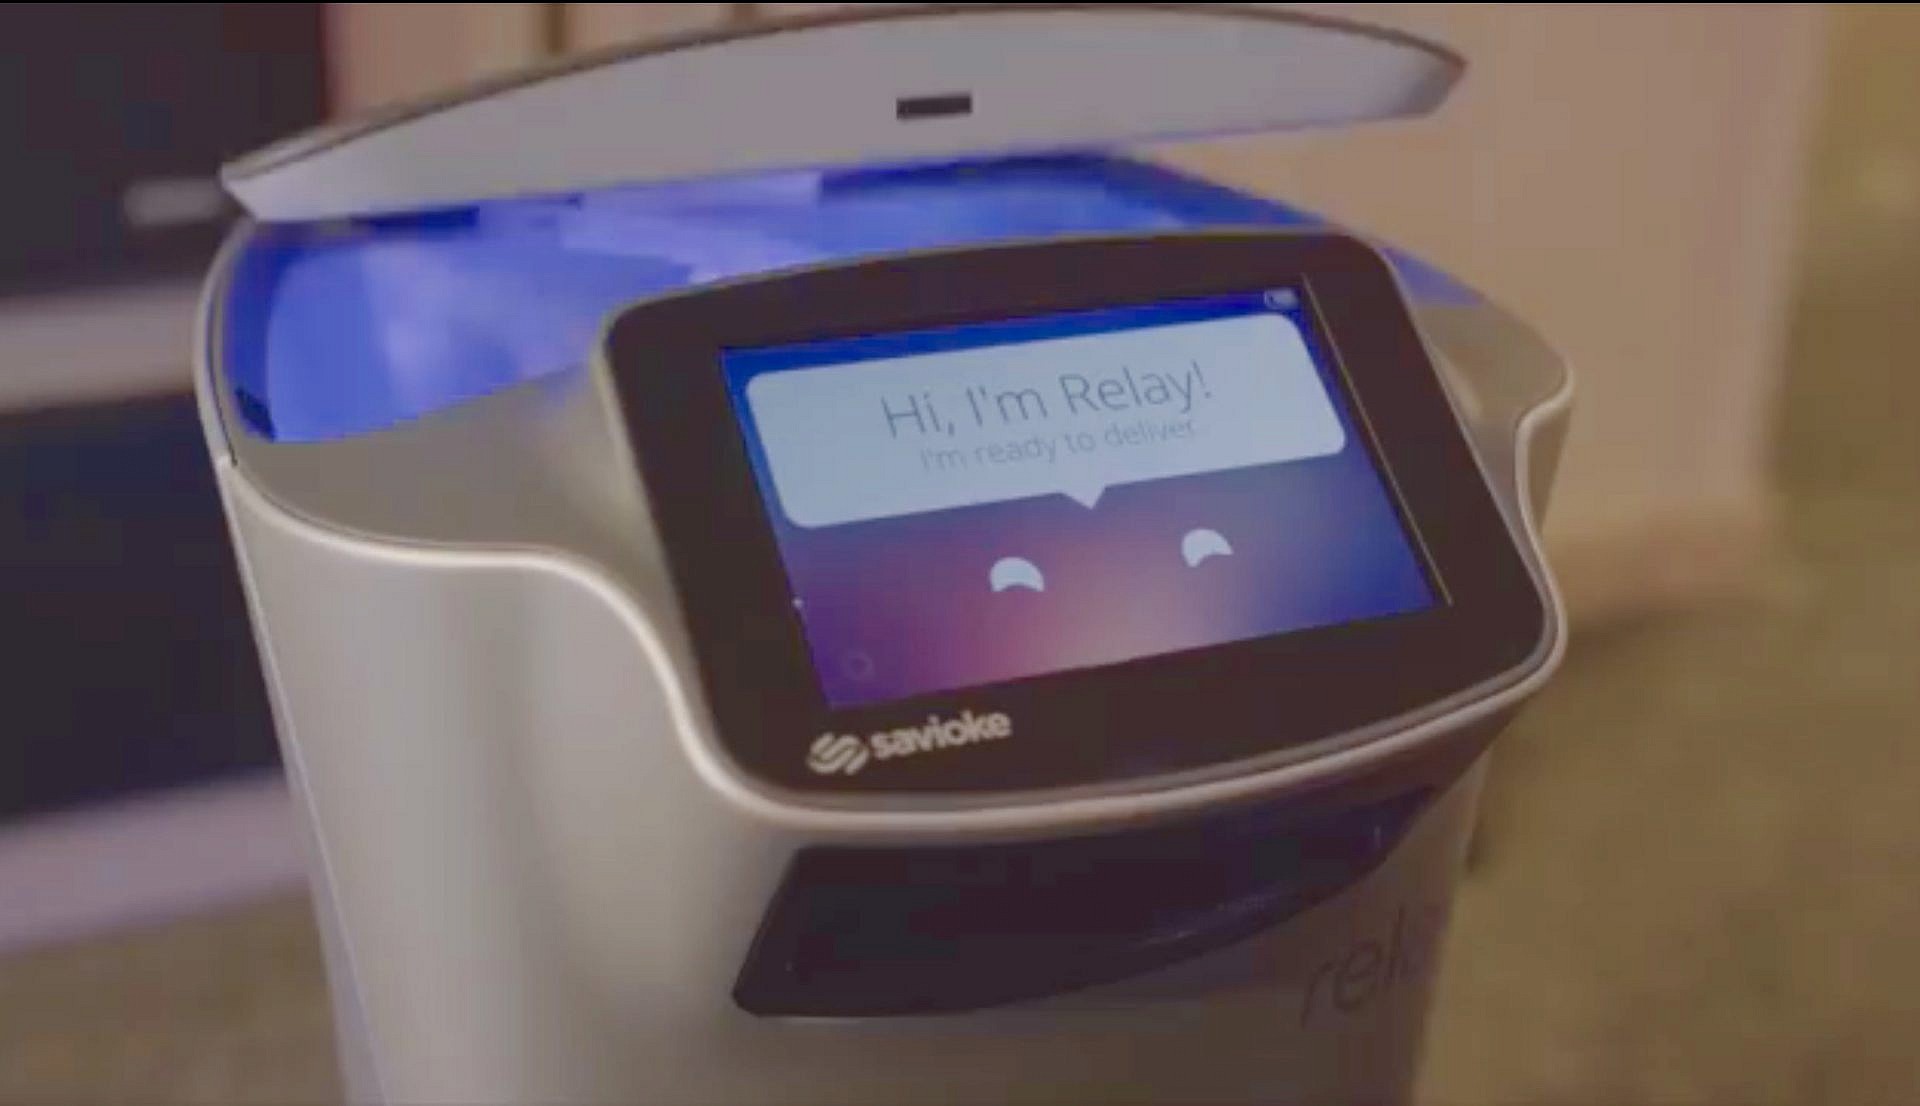 Relay หุ่นยนต์สุดเจ๋งที่สามารถส่งอาหารให้กับผู้เข้าพักในโรงแรมได้ด้วยตนเอง